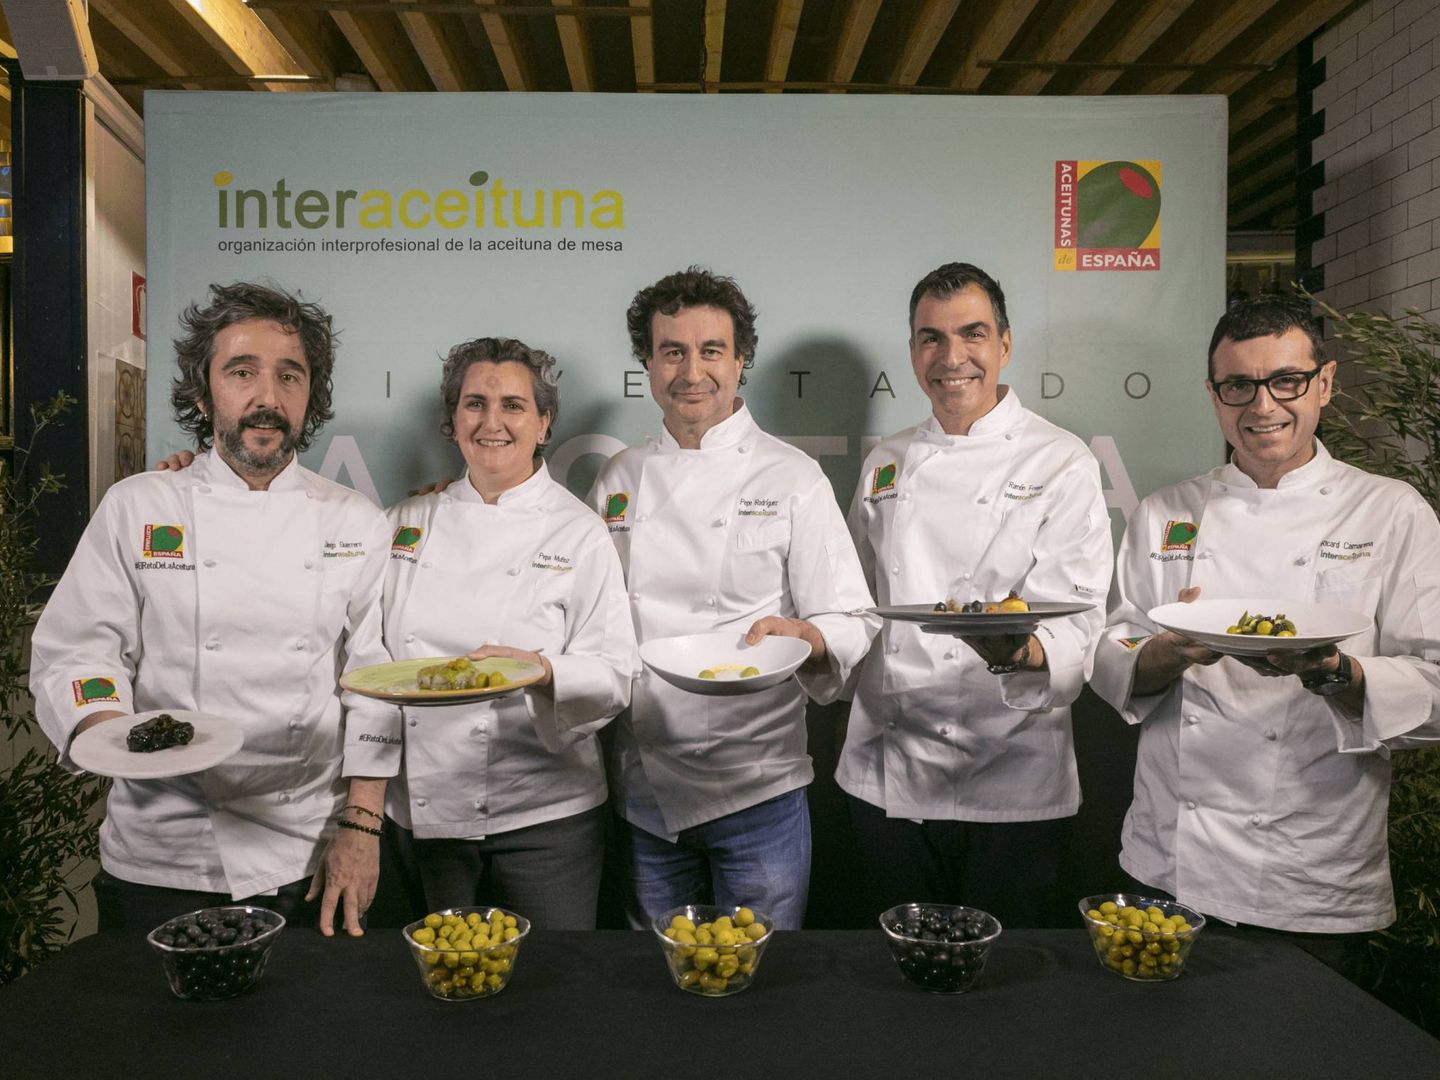 Los cinco chefs invitados con sus propuestas gastronómicas. (Interaceituna)